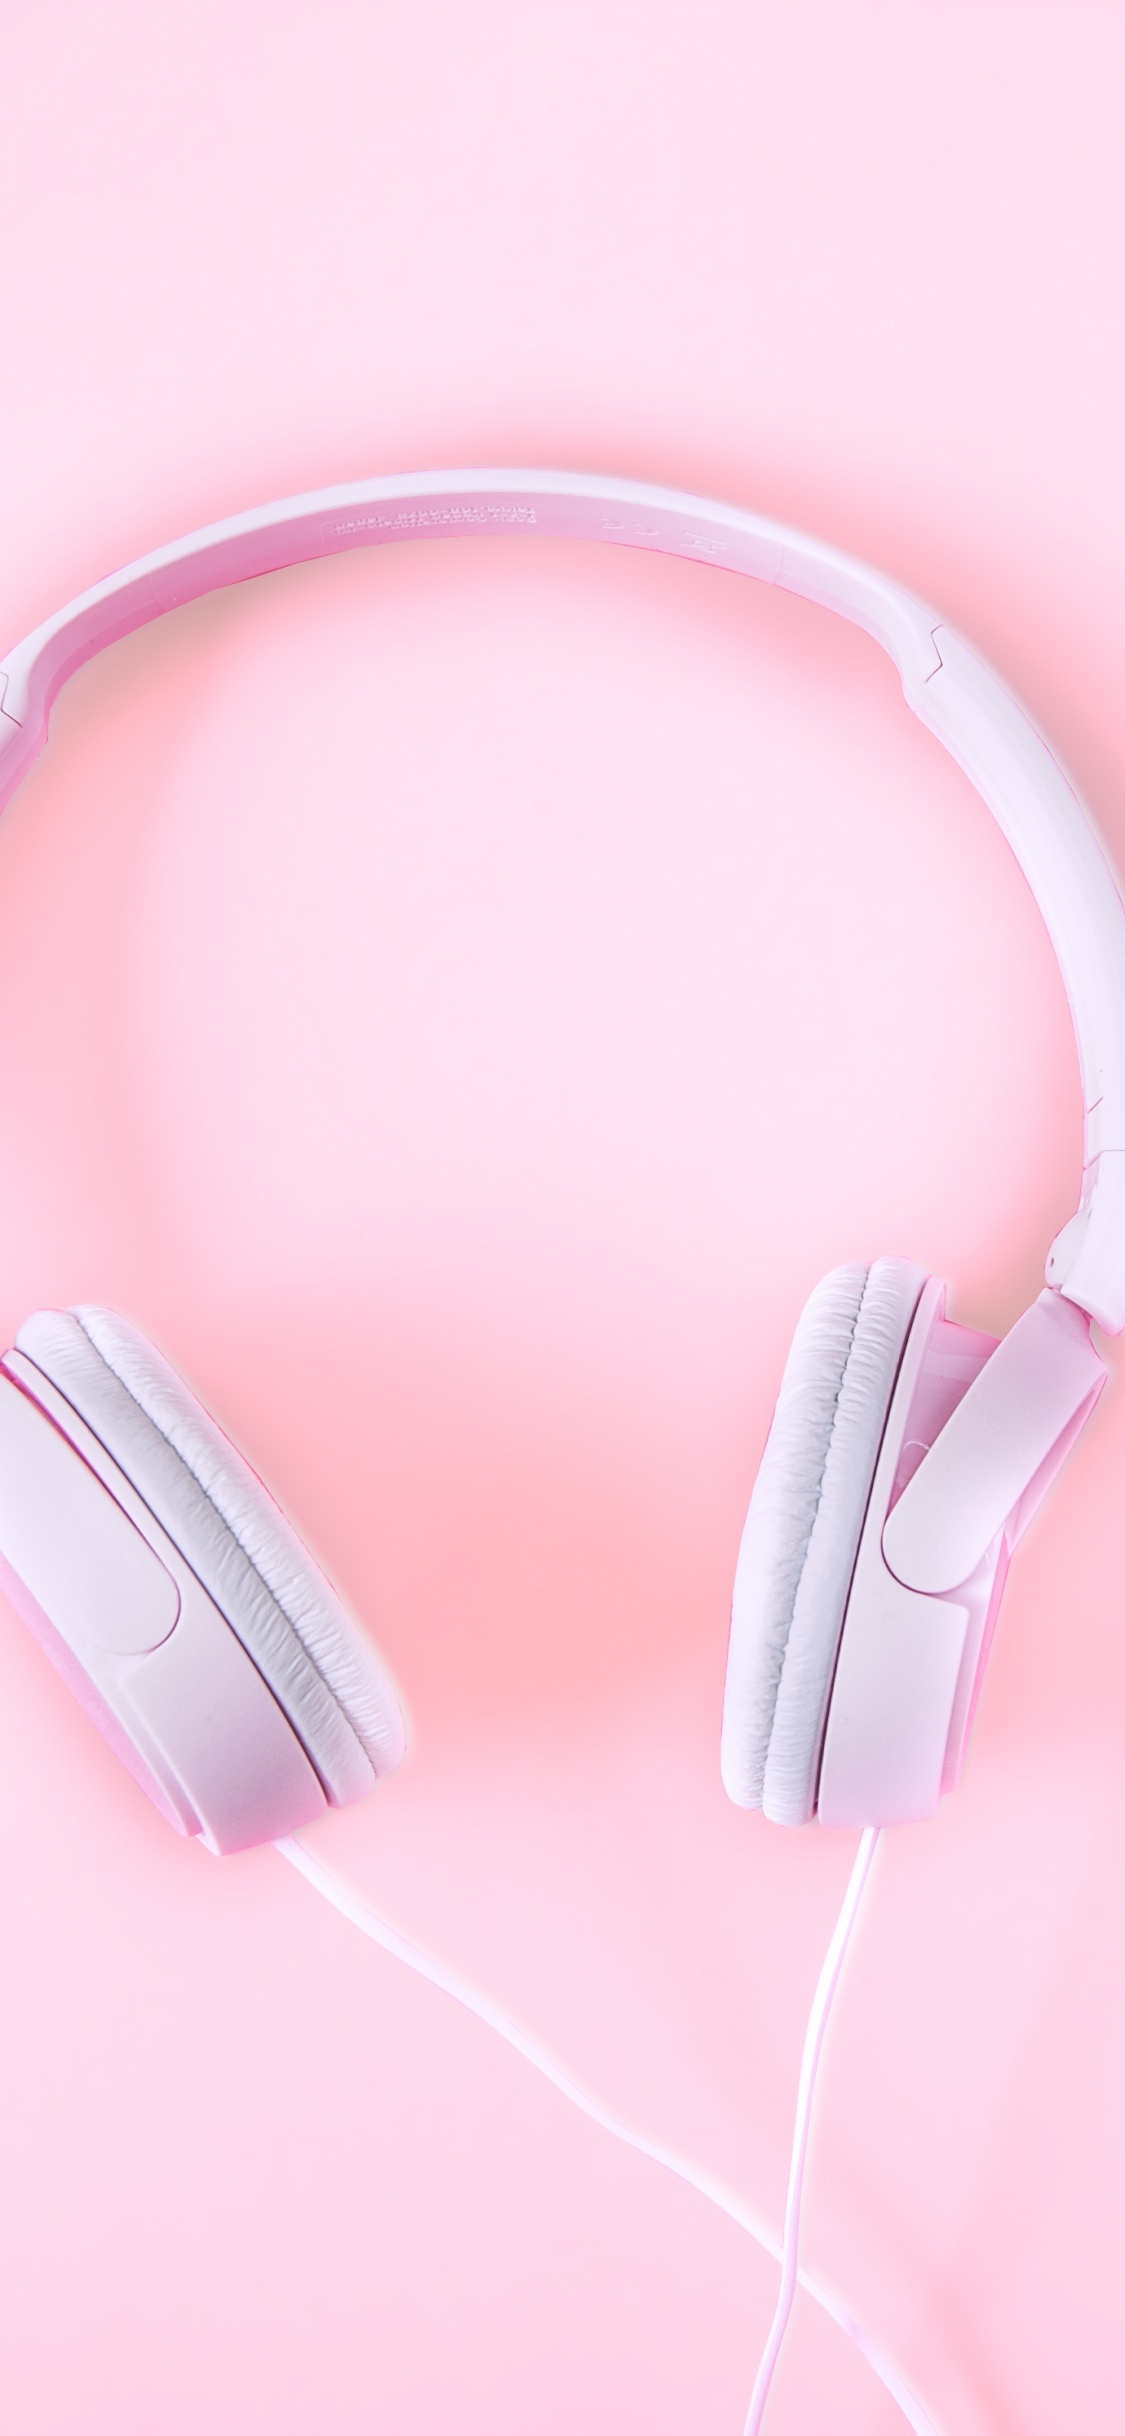 Kopfhörer, Pink, Audiogeräten, Gadget, Ohr. Wallpaper in 1125x2436 Resolution